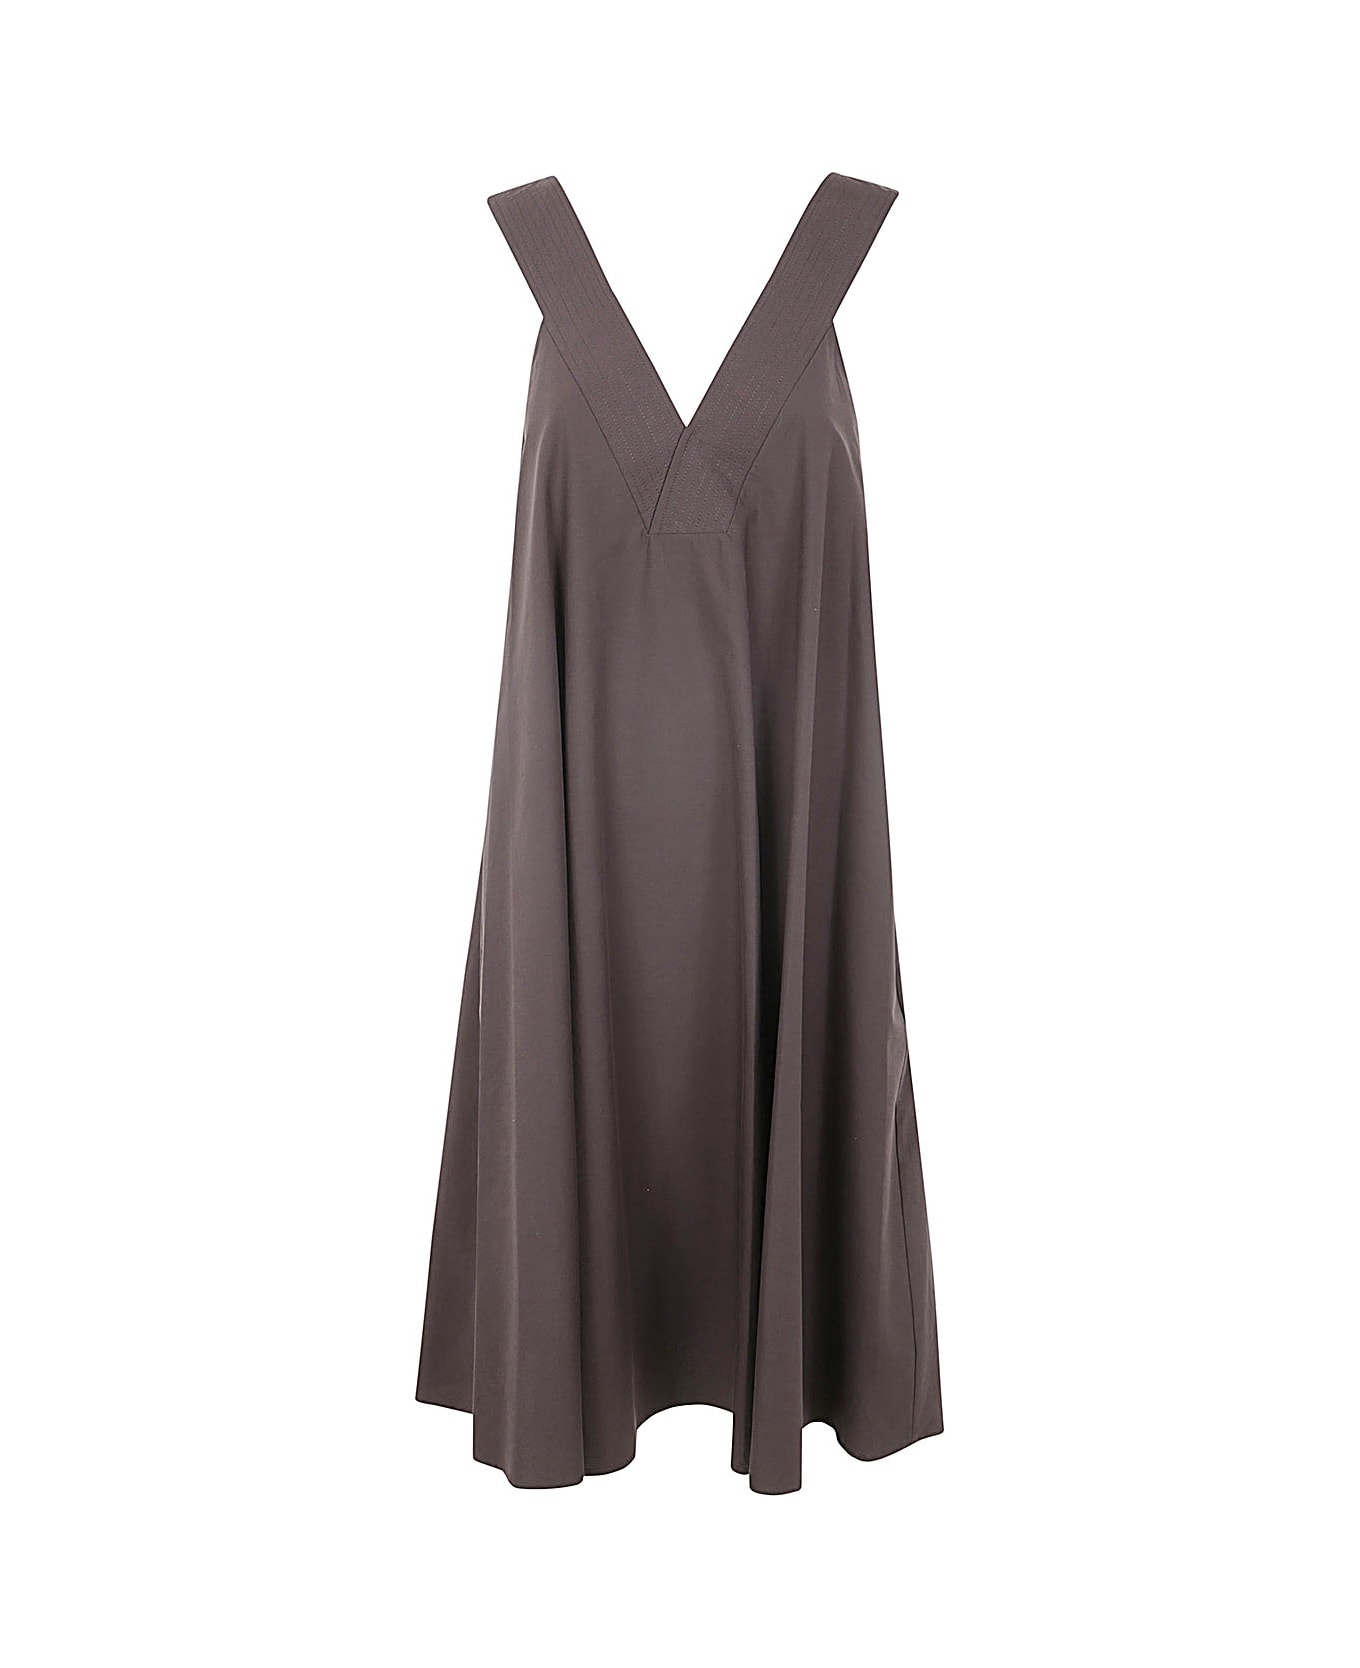 Parosh Knotted Mini Dress - Dark Brown